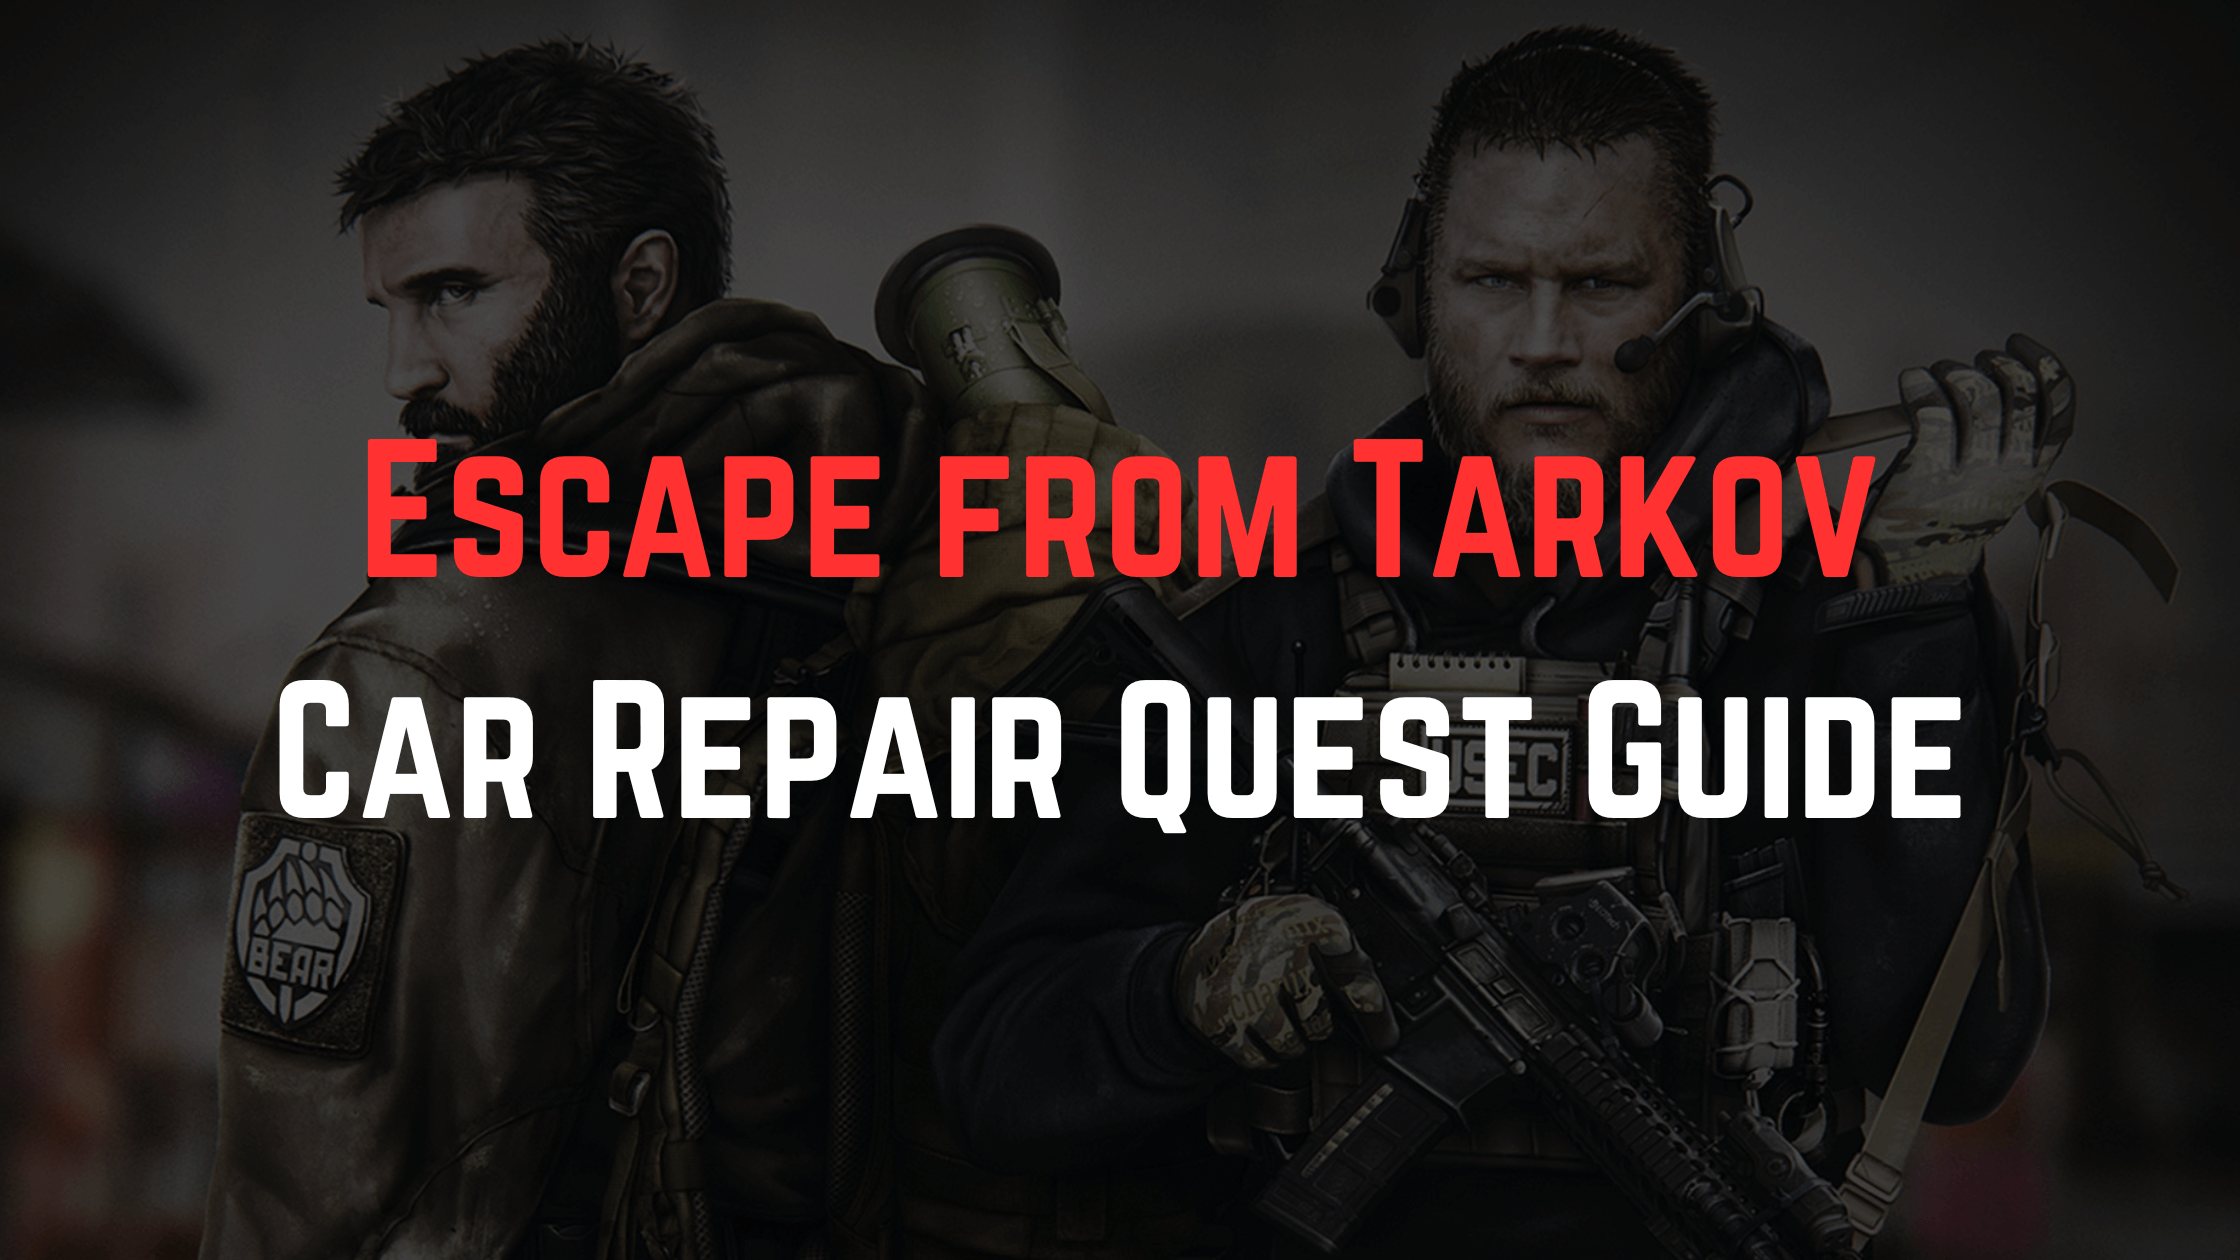 Escape from Tarkov Car Repair Quest Guide